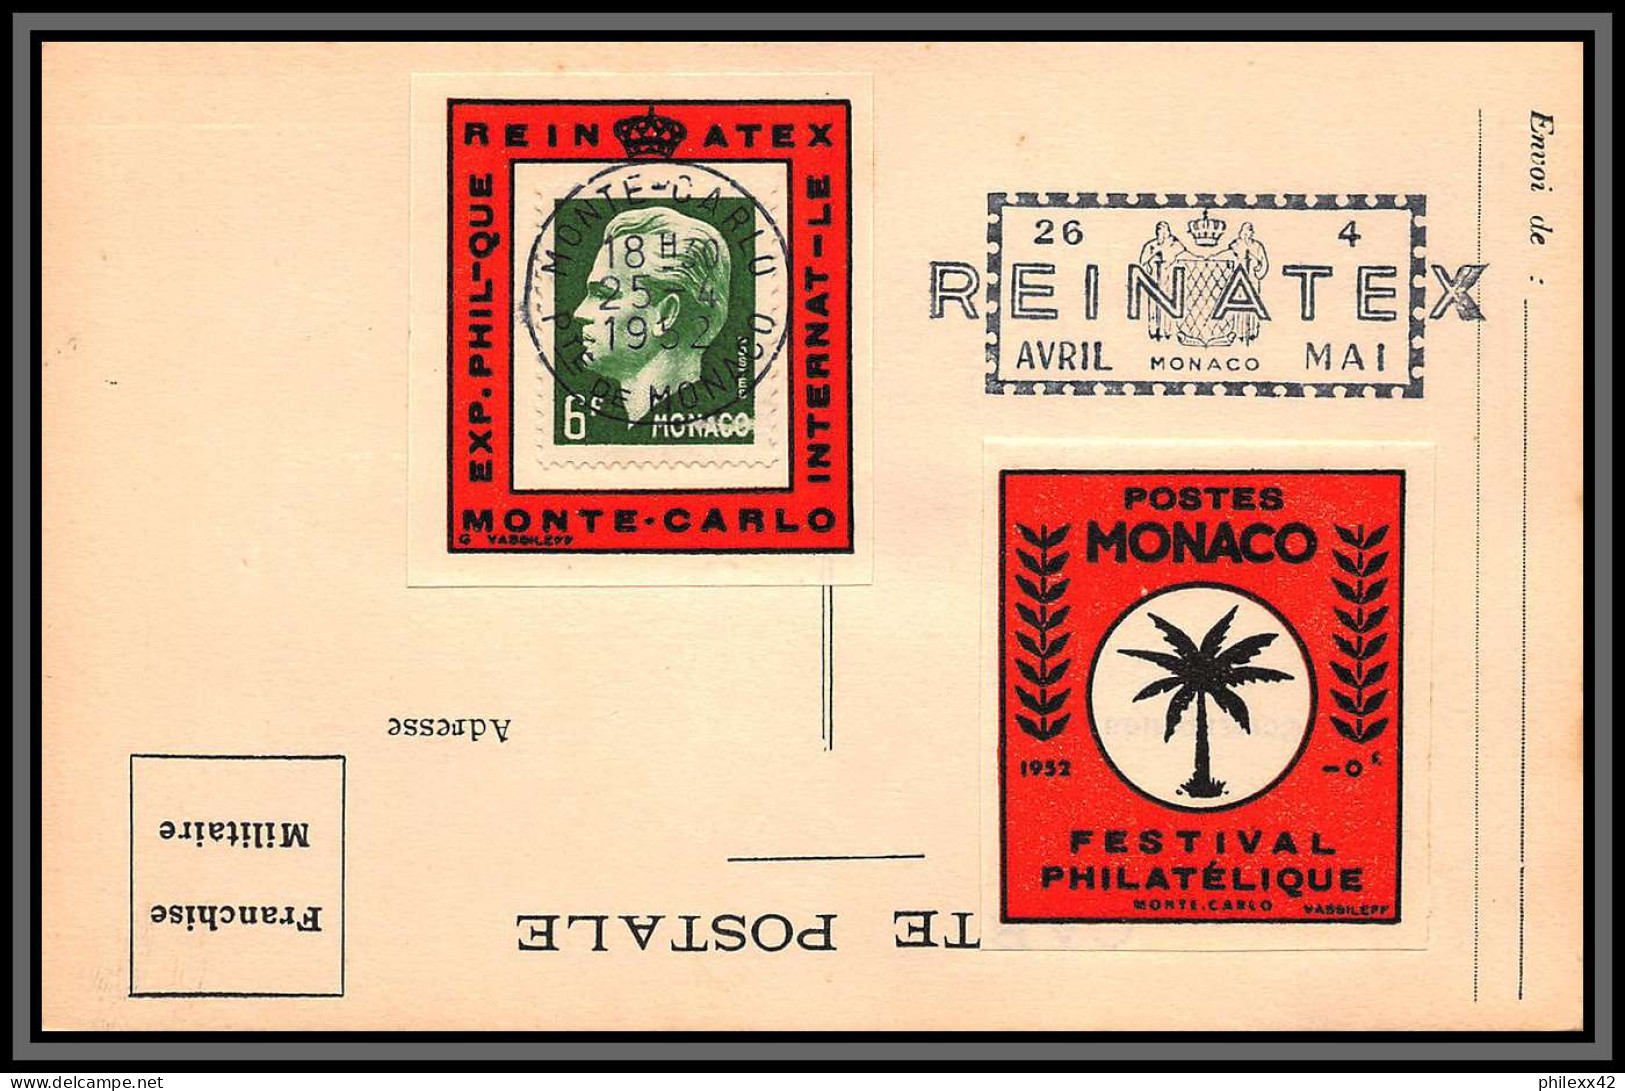 74926 (1) REINATEX 1952 joli lot collection vignette porte timbre stamp holder lettre cover Monaco france italia